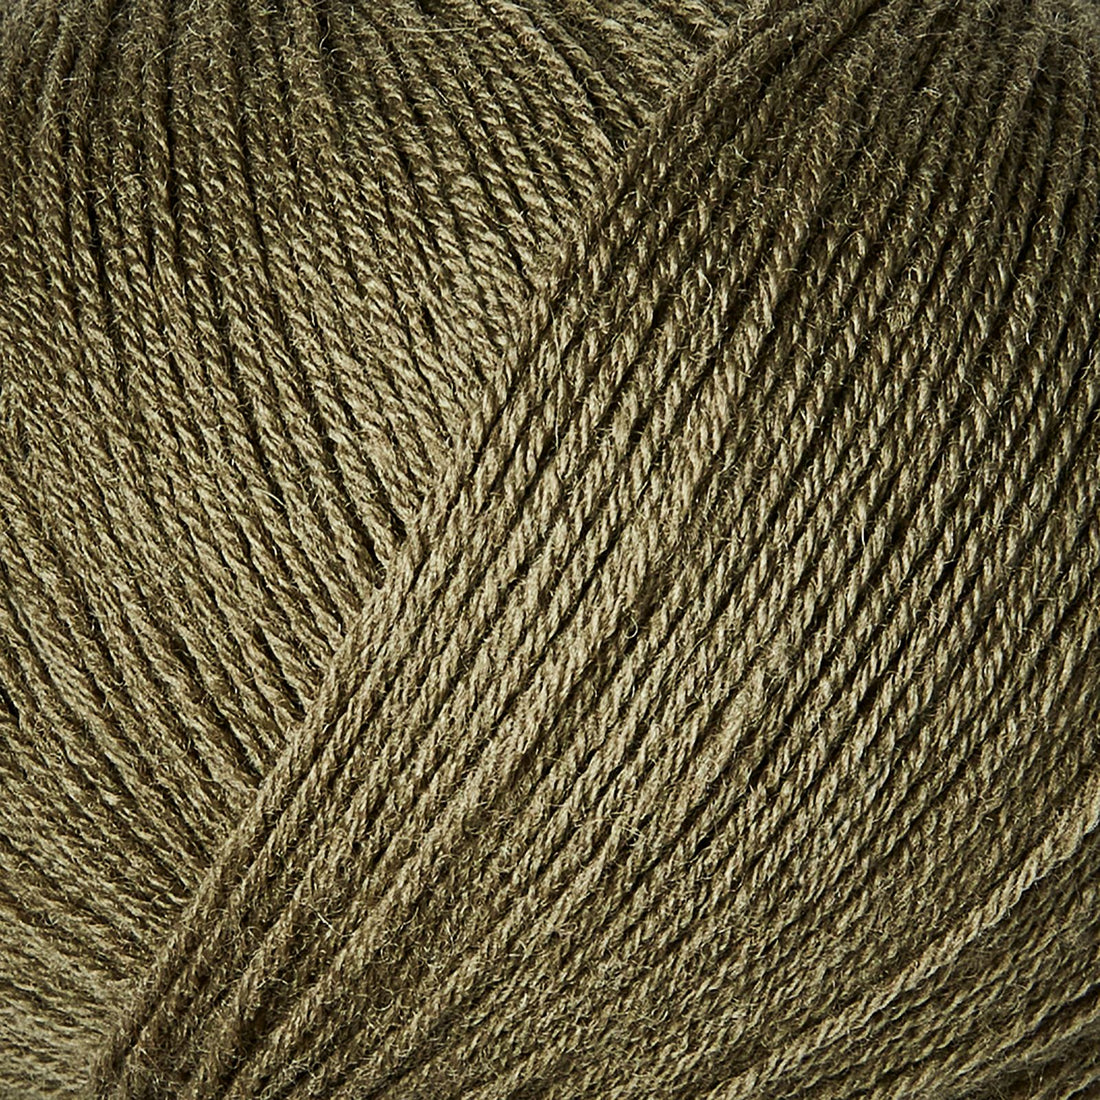 Merino | Knitting for Olive